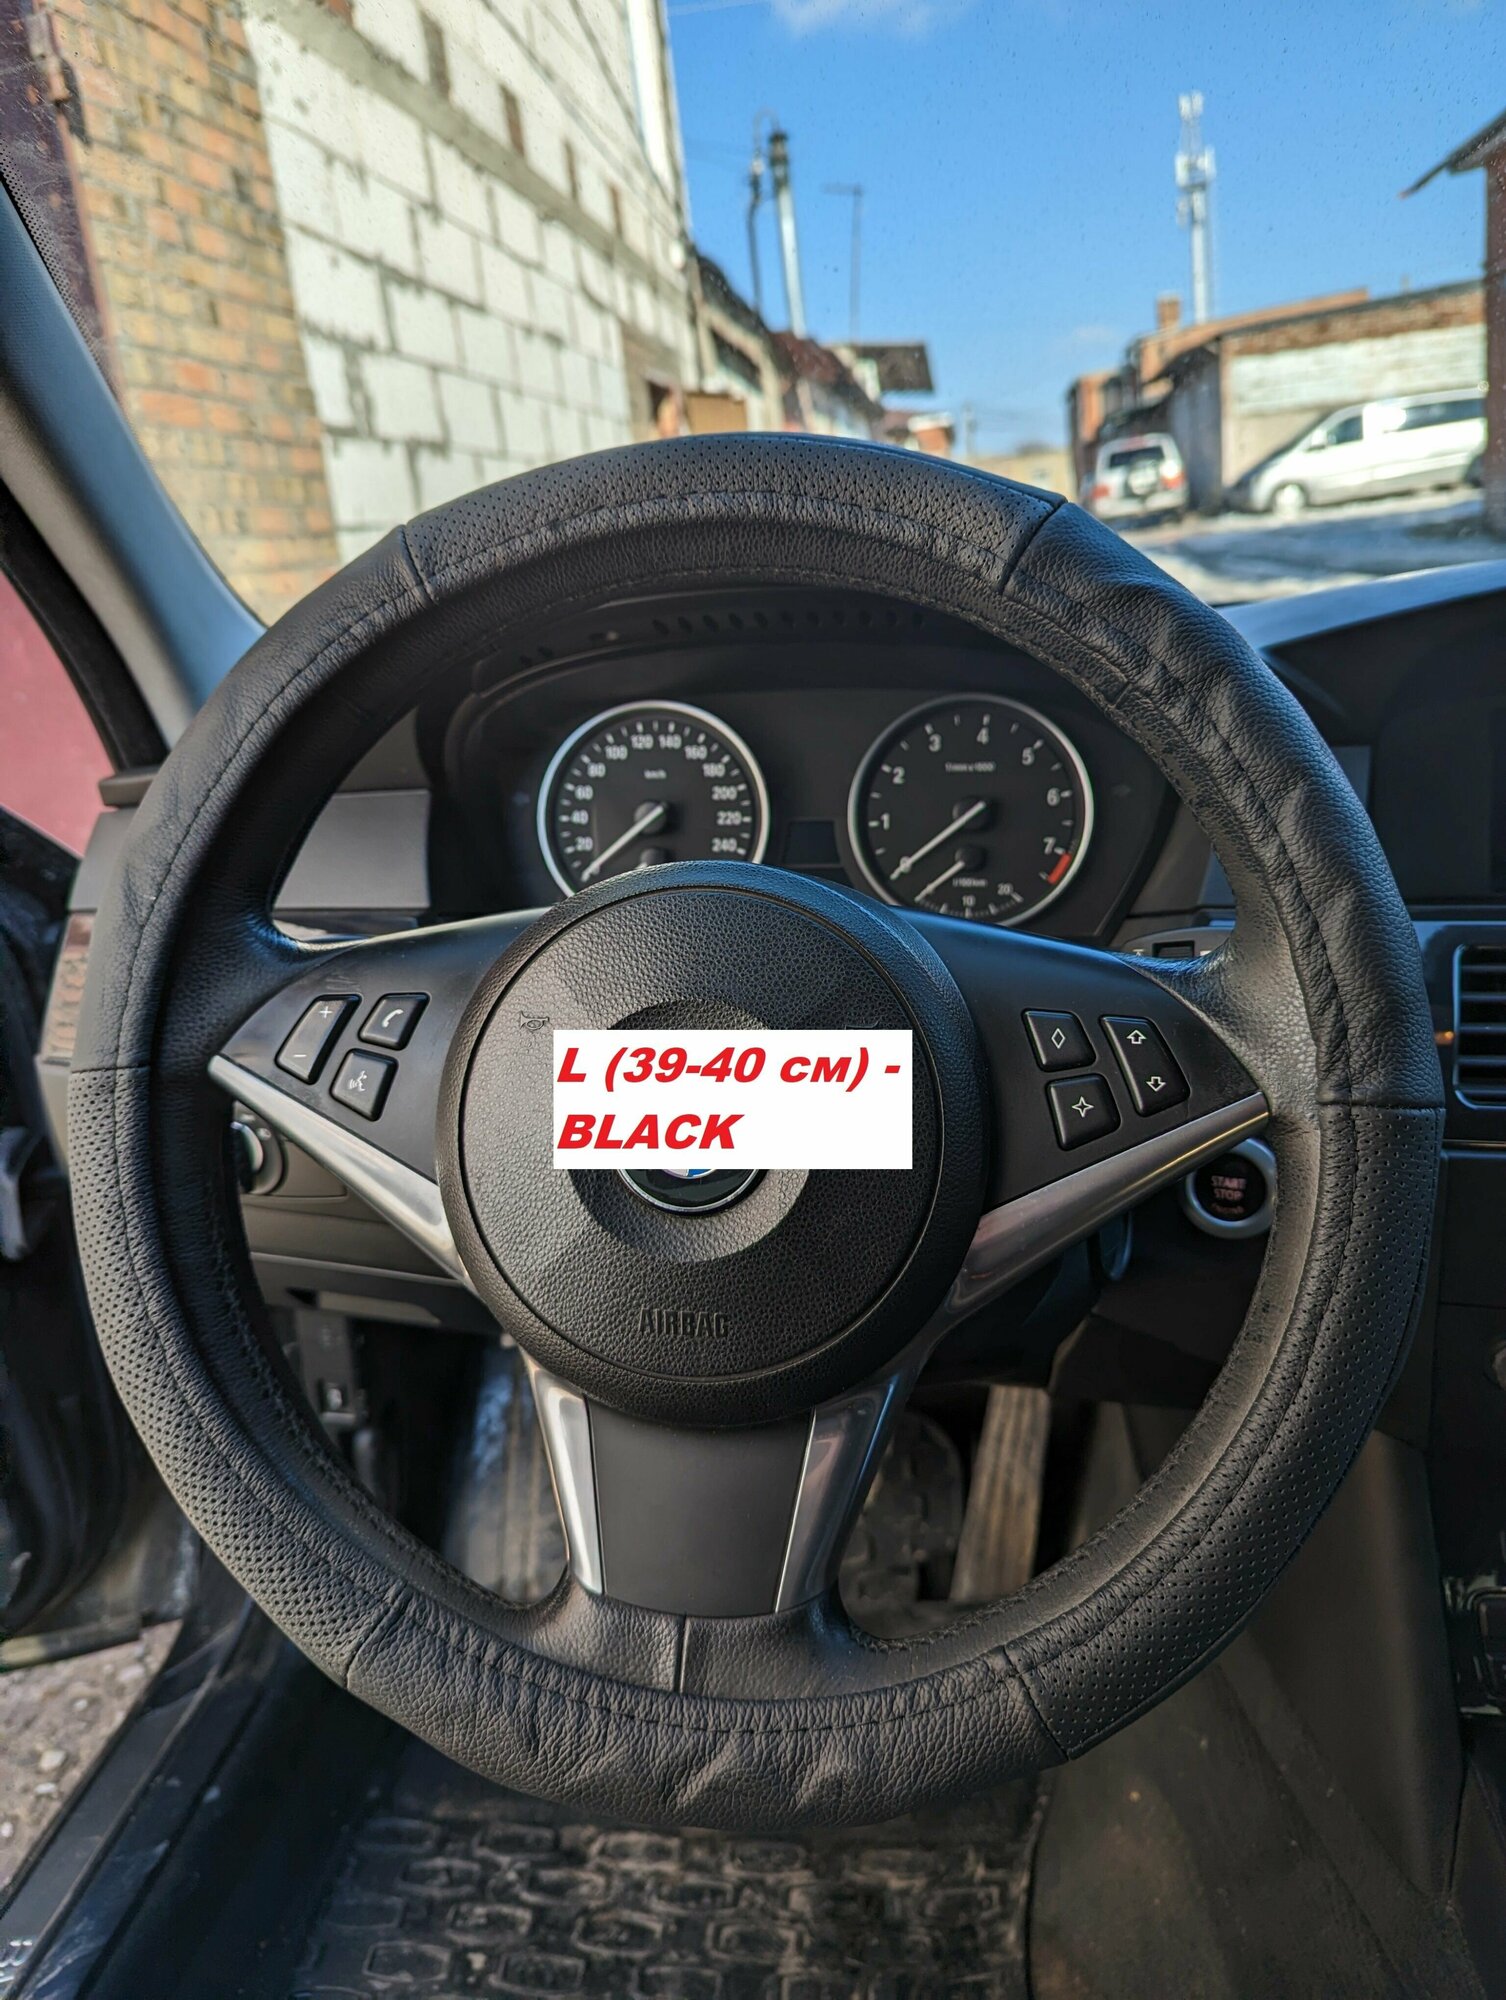 Универсальный чехол оплетка на руль автомобиля из натуральной кожи black size L(39-40 см)